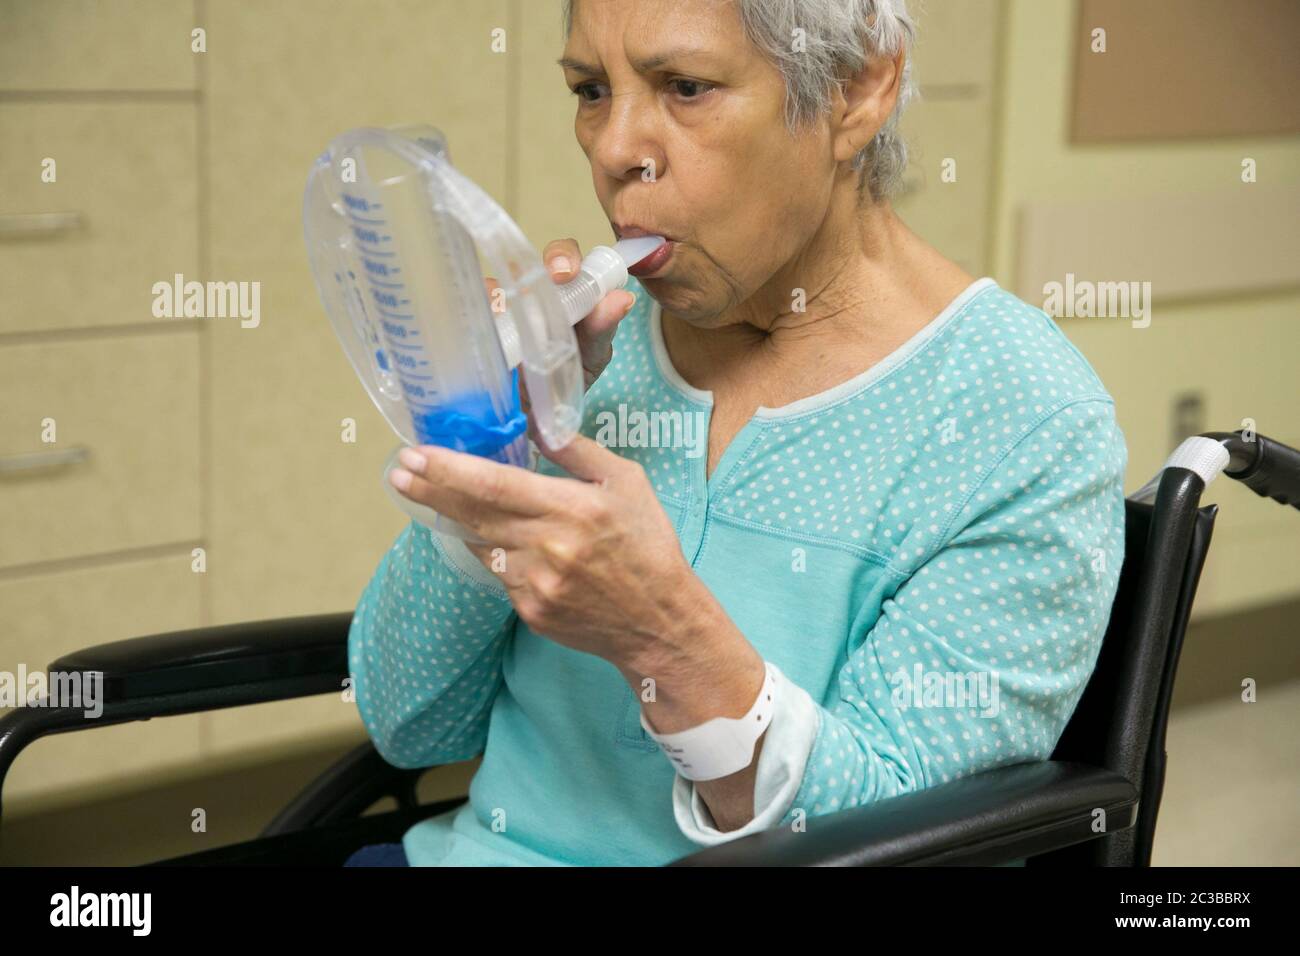 Austin Texas États-Unis, 11 février 2014: Une femme hispanique de 75 ans utilise un appareil médical d'exercice respiratoire tout en récupérant dans un hôpital de réadaptation. ©Marjorie Kamys Cotera/Daemmrich Photographie Banque D'Images